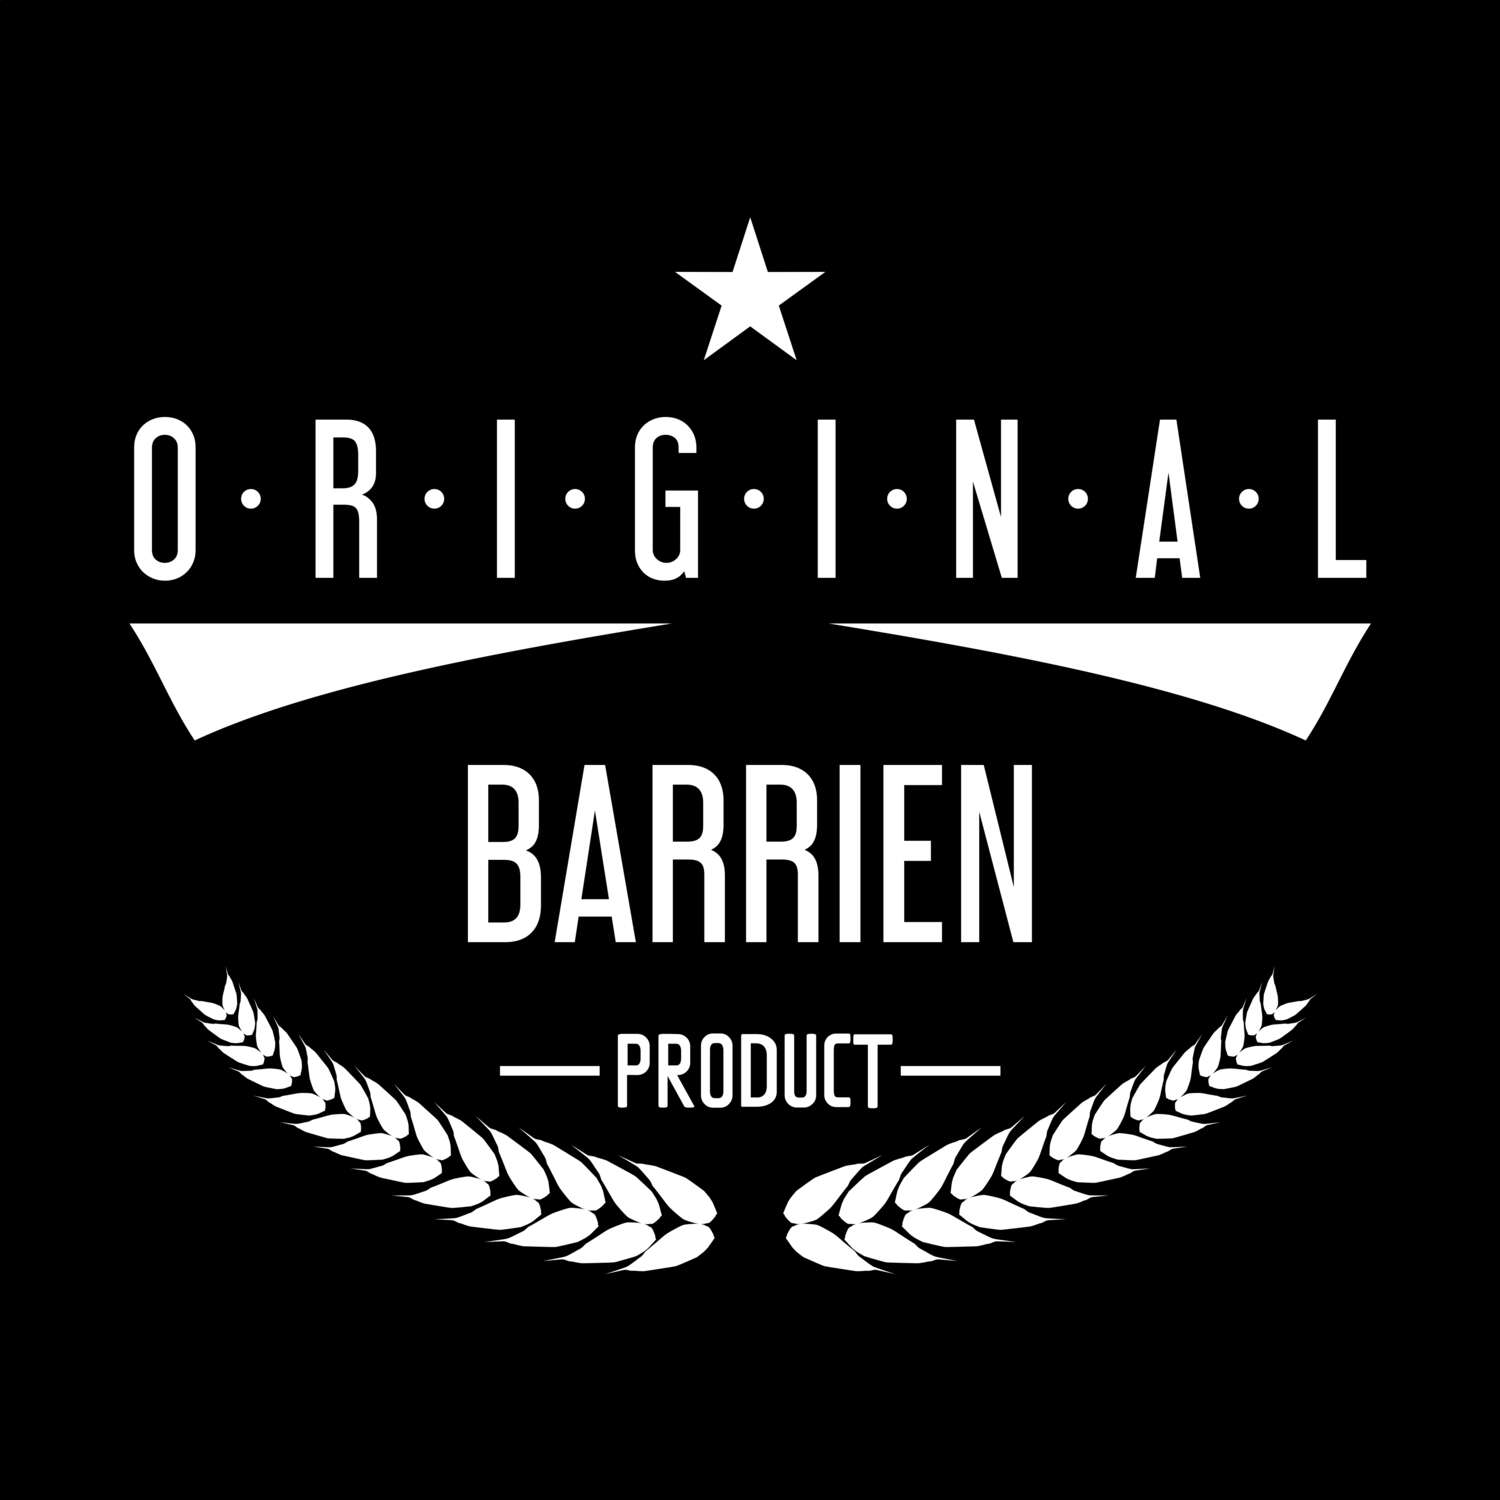 Barrien T-Shirt »Original Product«